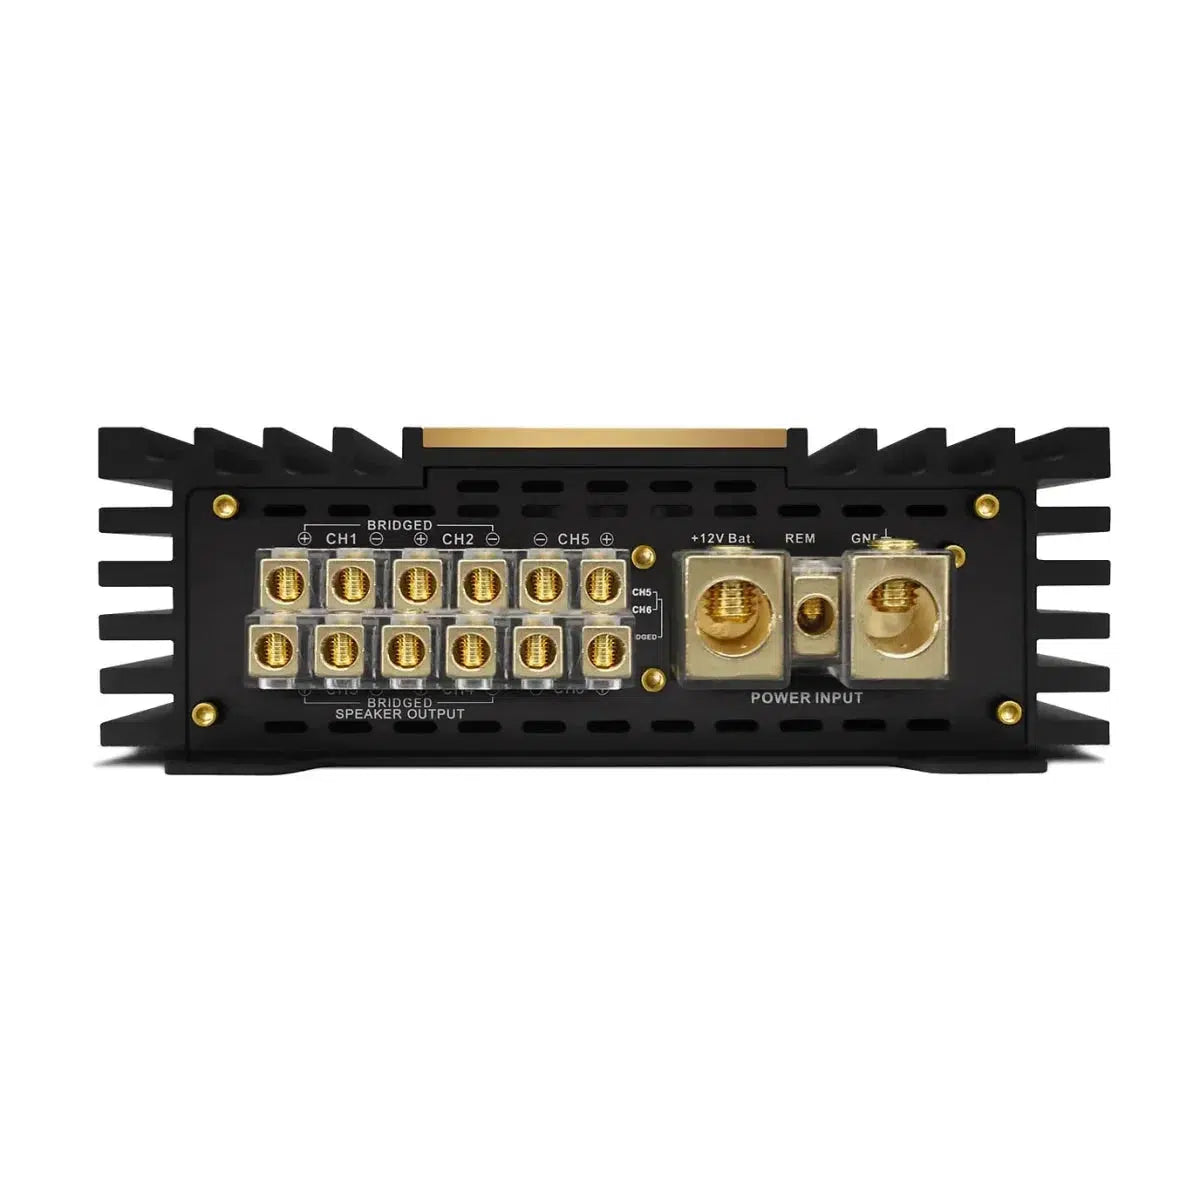 ZAPCO-Z-AP Audiophile Series - Amplificador de 6 canales Z-150.6 AP-Masori.de